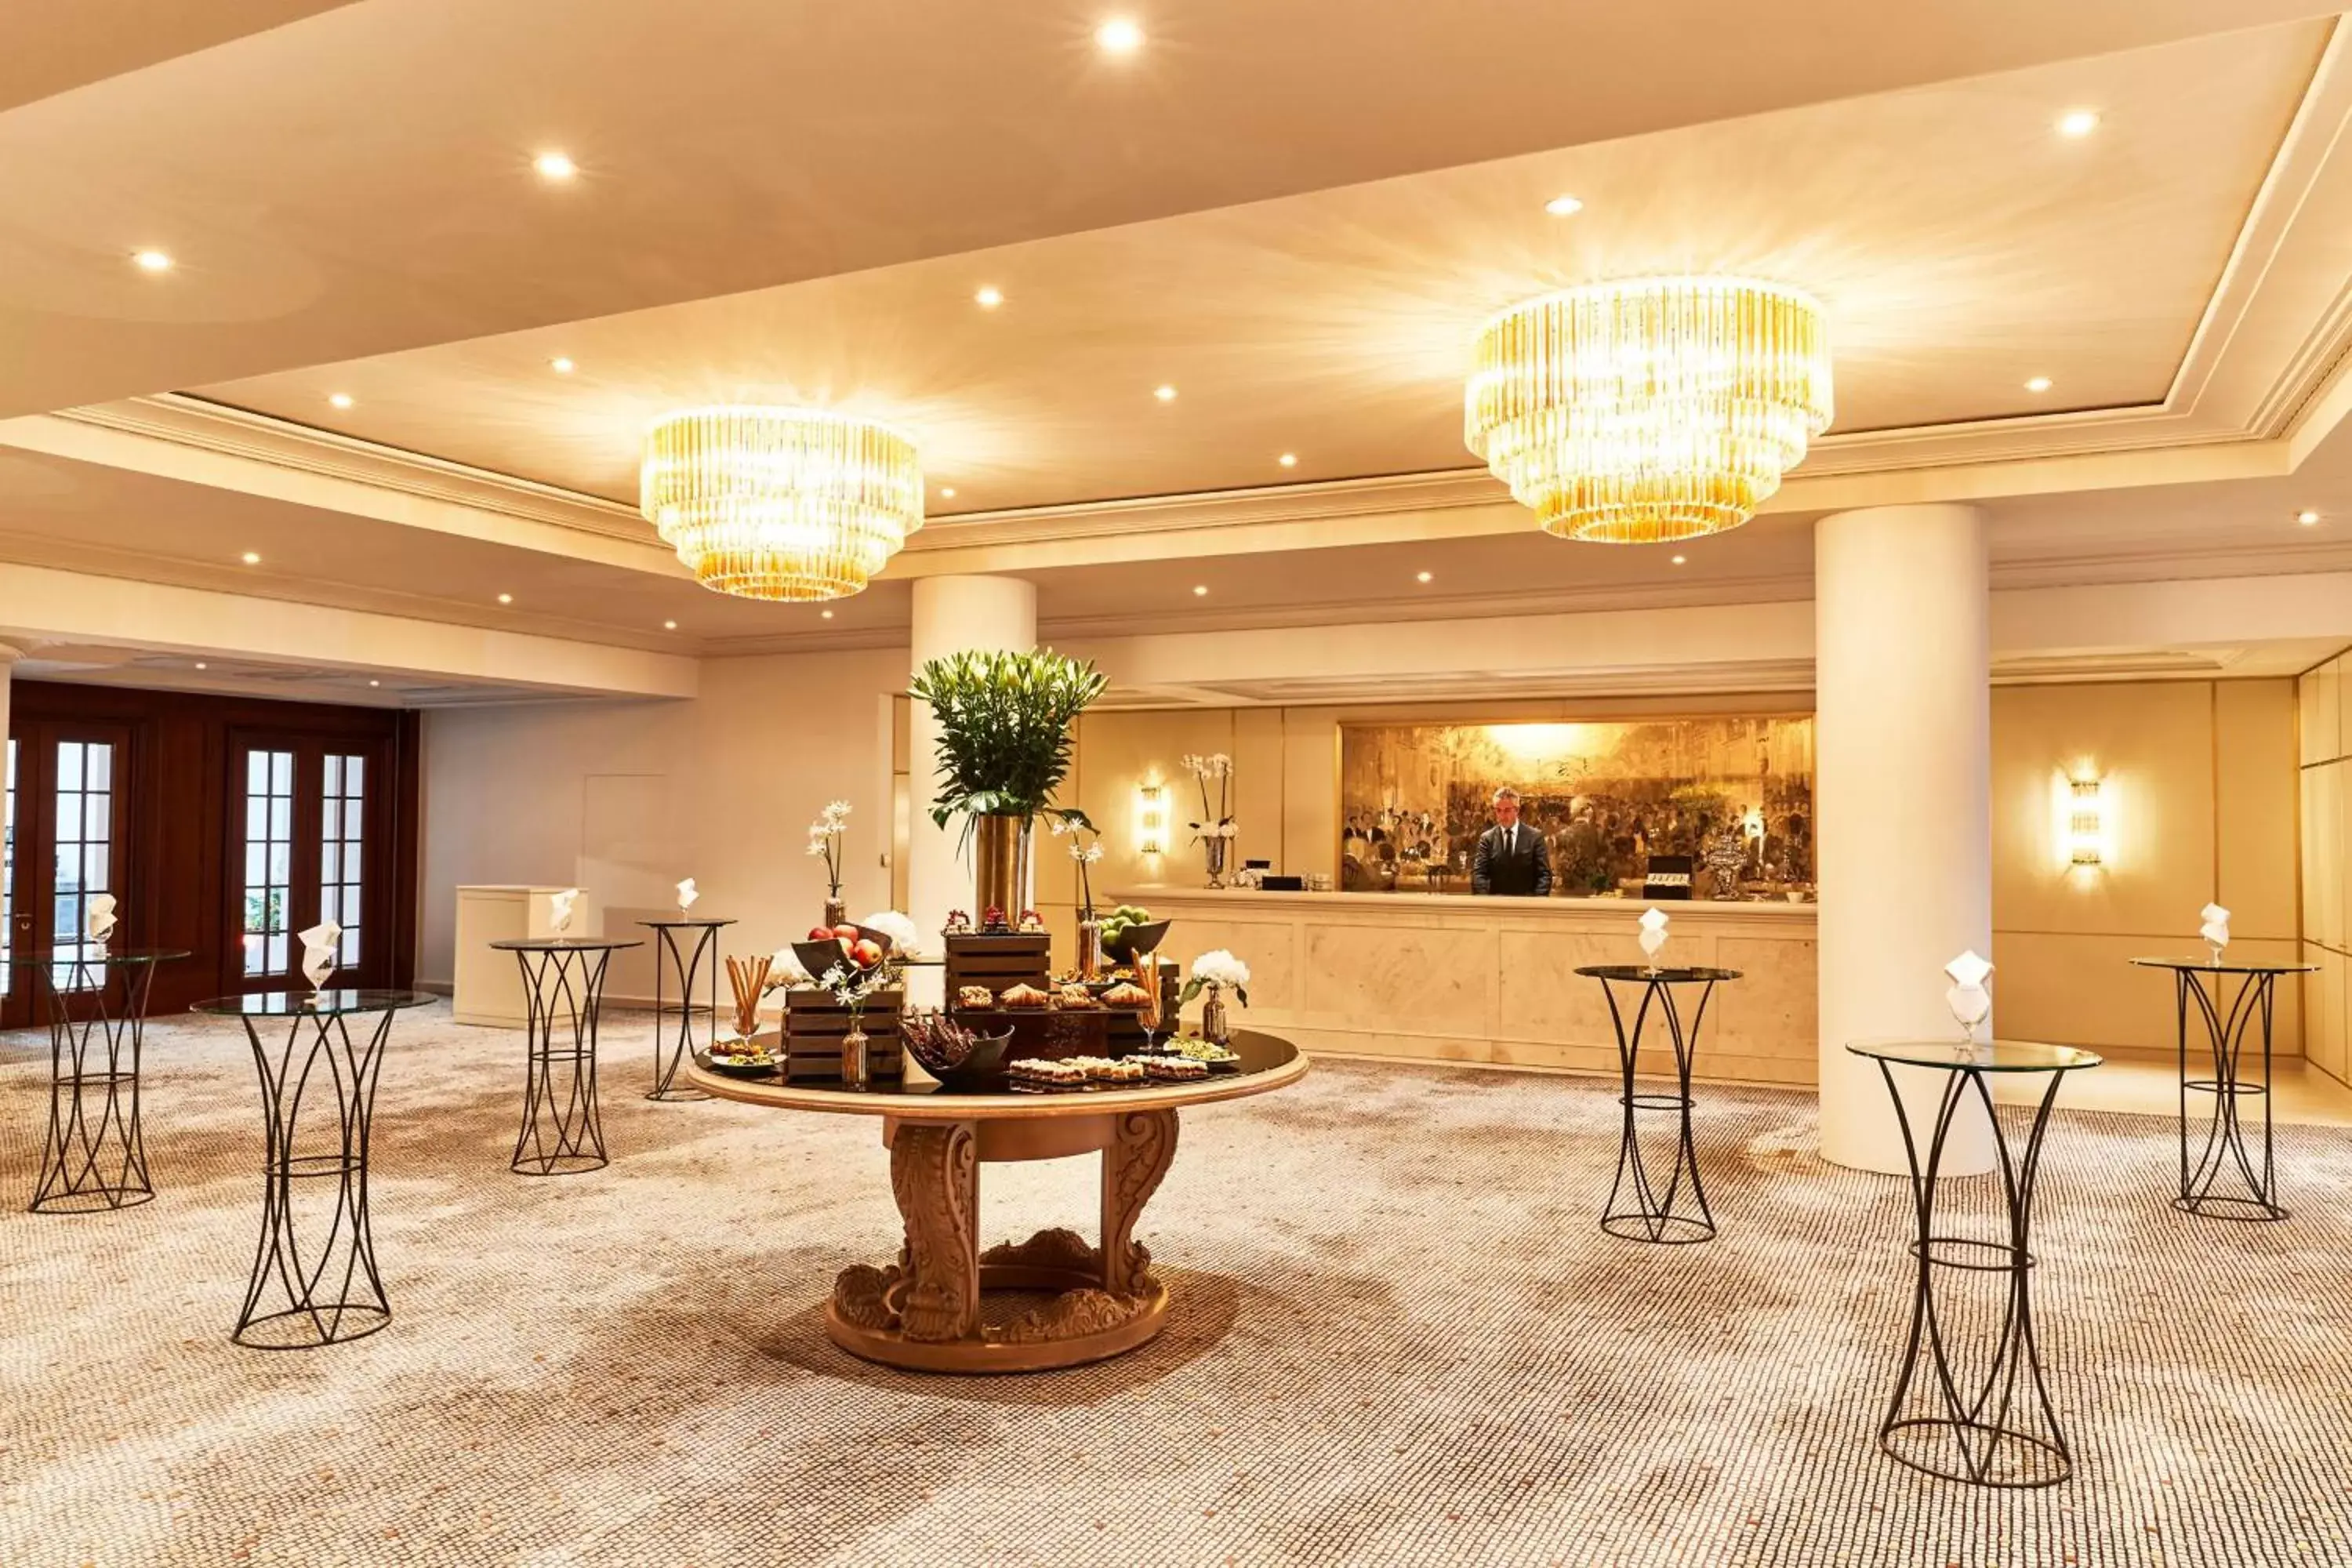 Banquet/Function facilities, Lobby/Reception in Hotel Adlon Kempinski Berlin